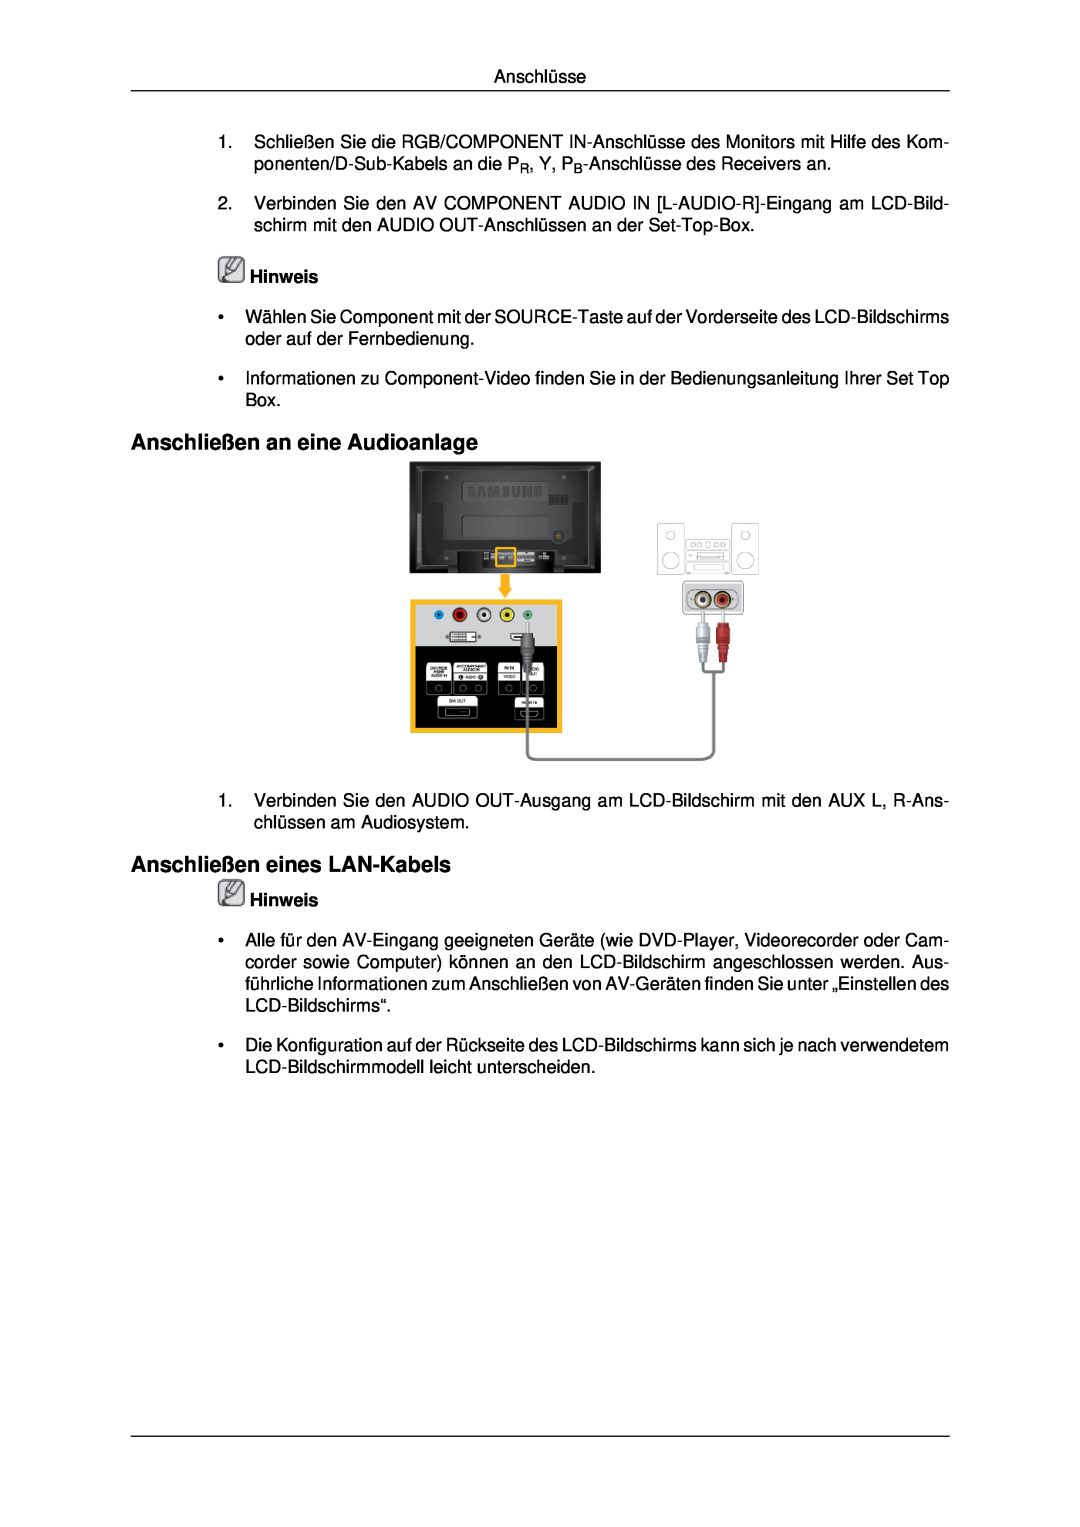 Samsung LH46MSTABB/EN, LH46MRPLBF/EN, LH40MRTLBC/EN Anschließen an eine Audioanlage, Anschließen eines LAN-Kabels, Hinweis 